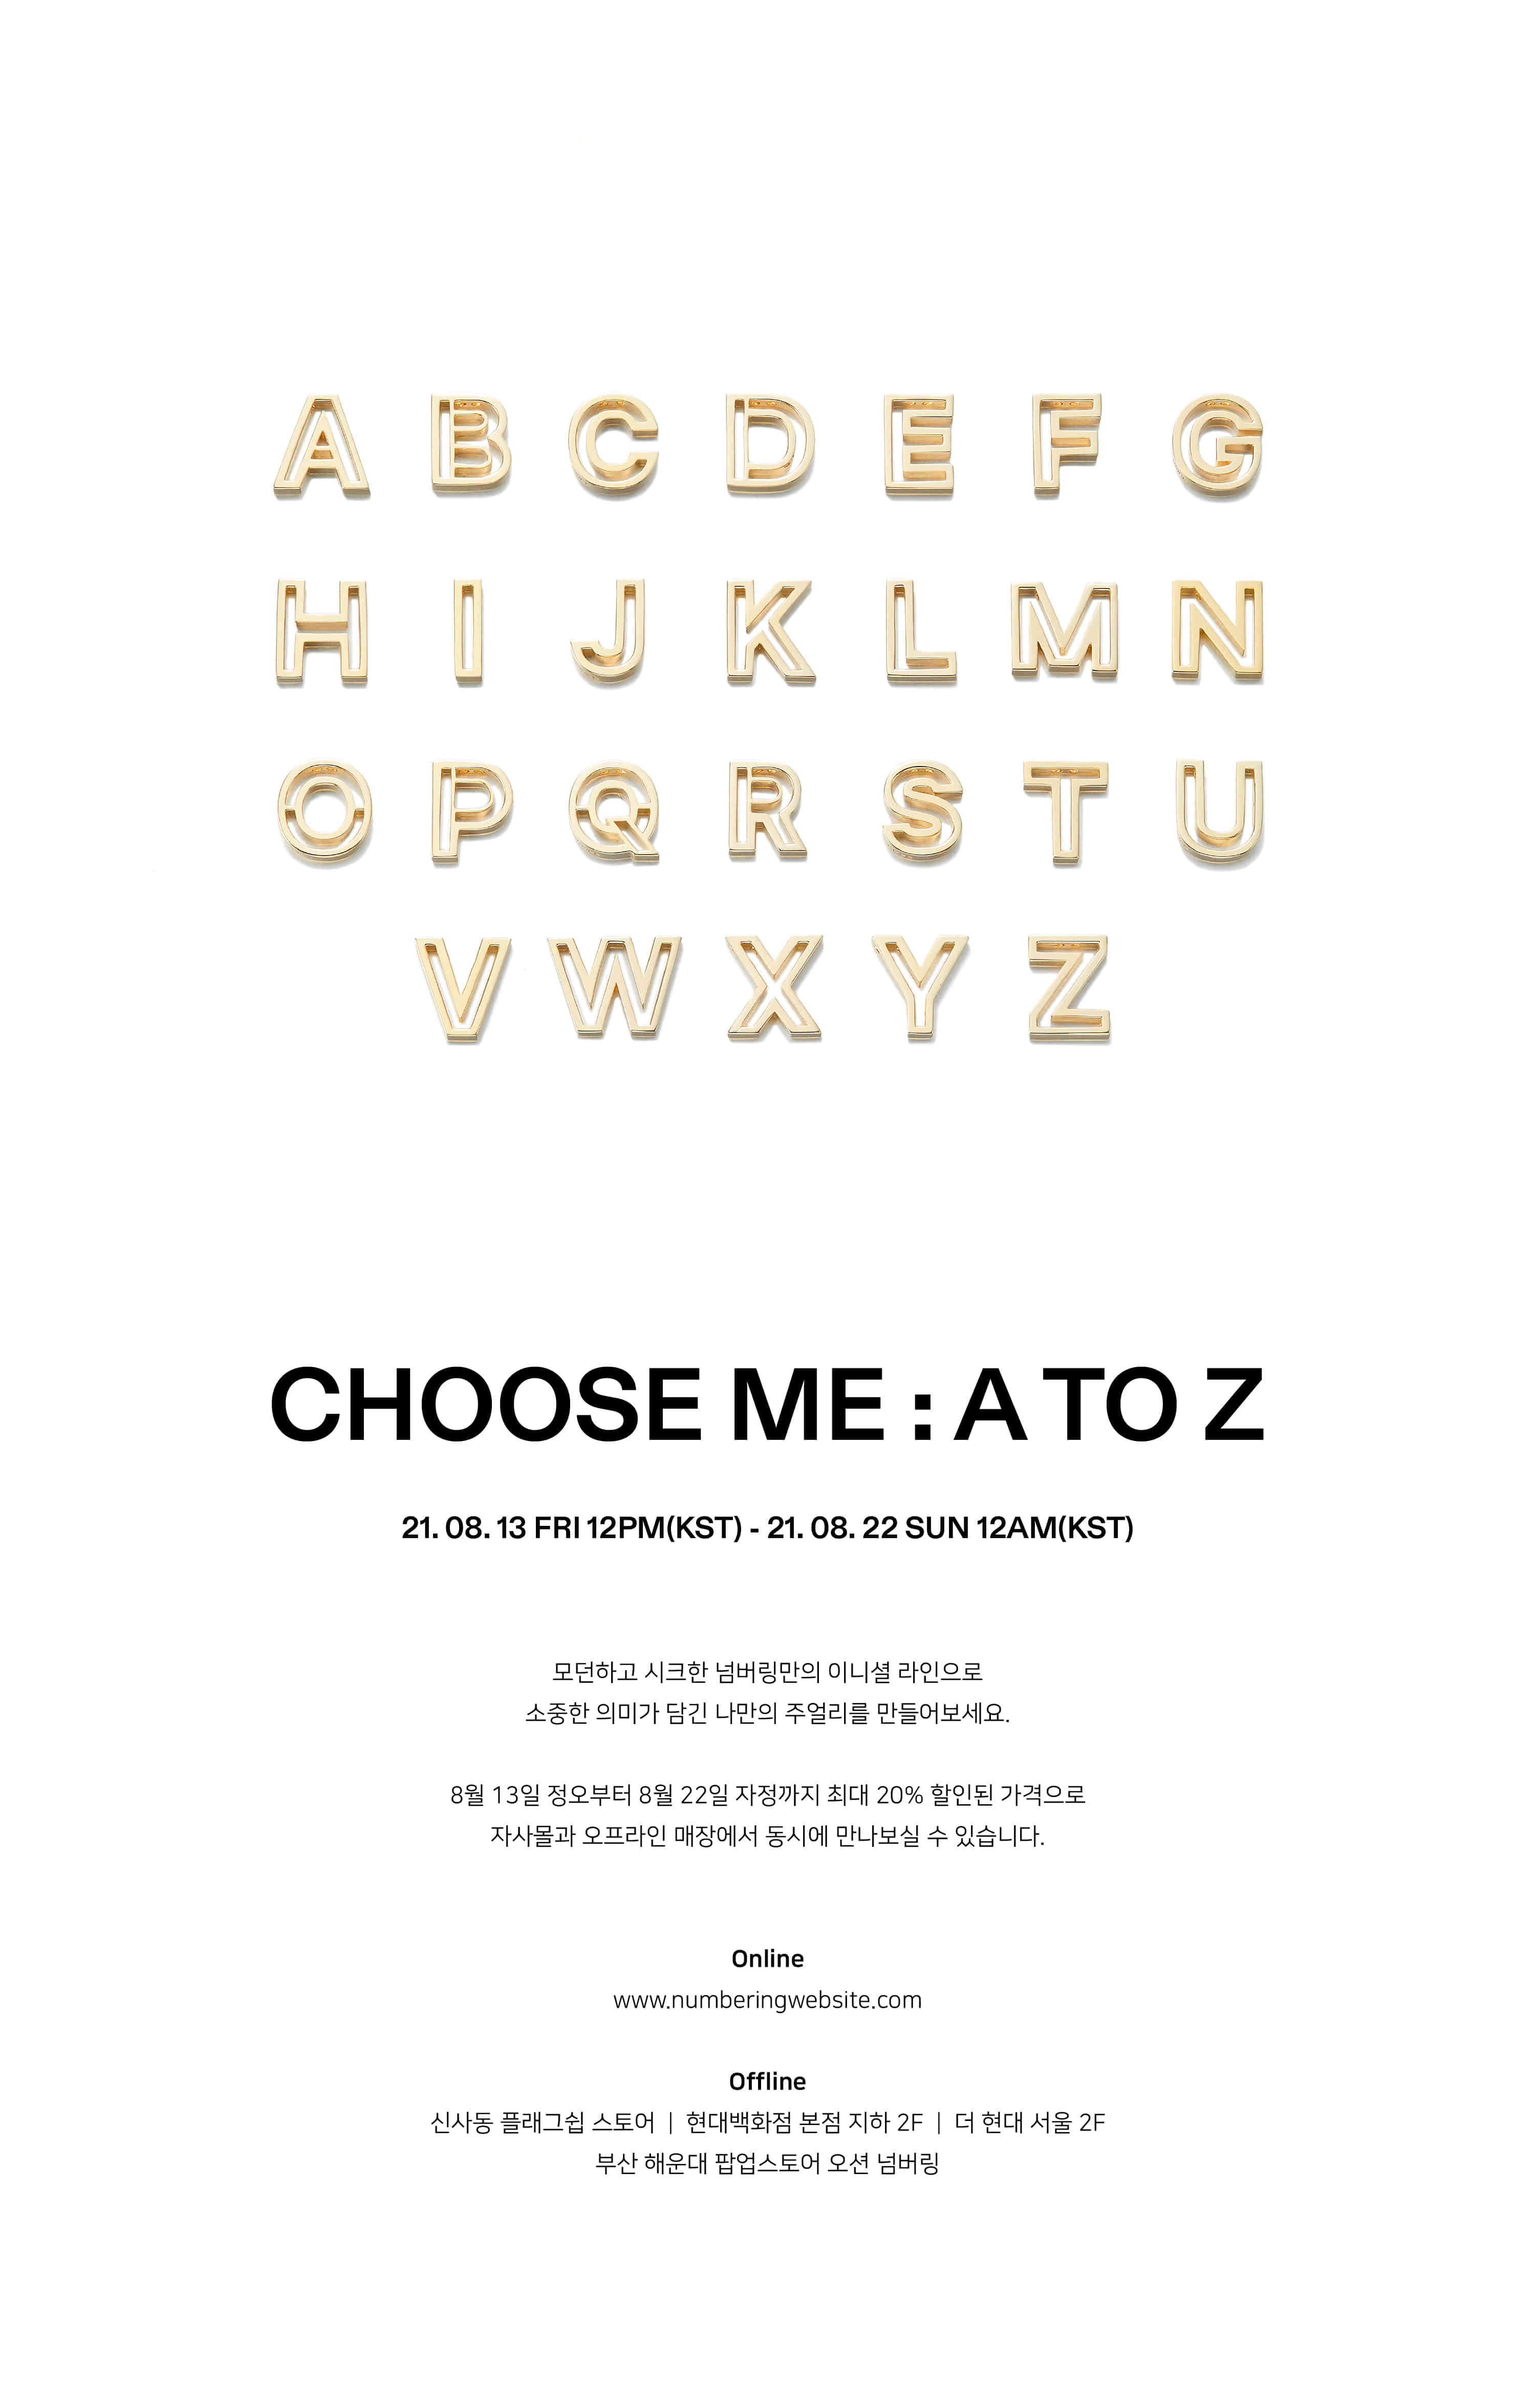 Choose Me: A to Z